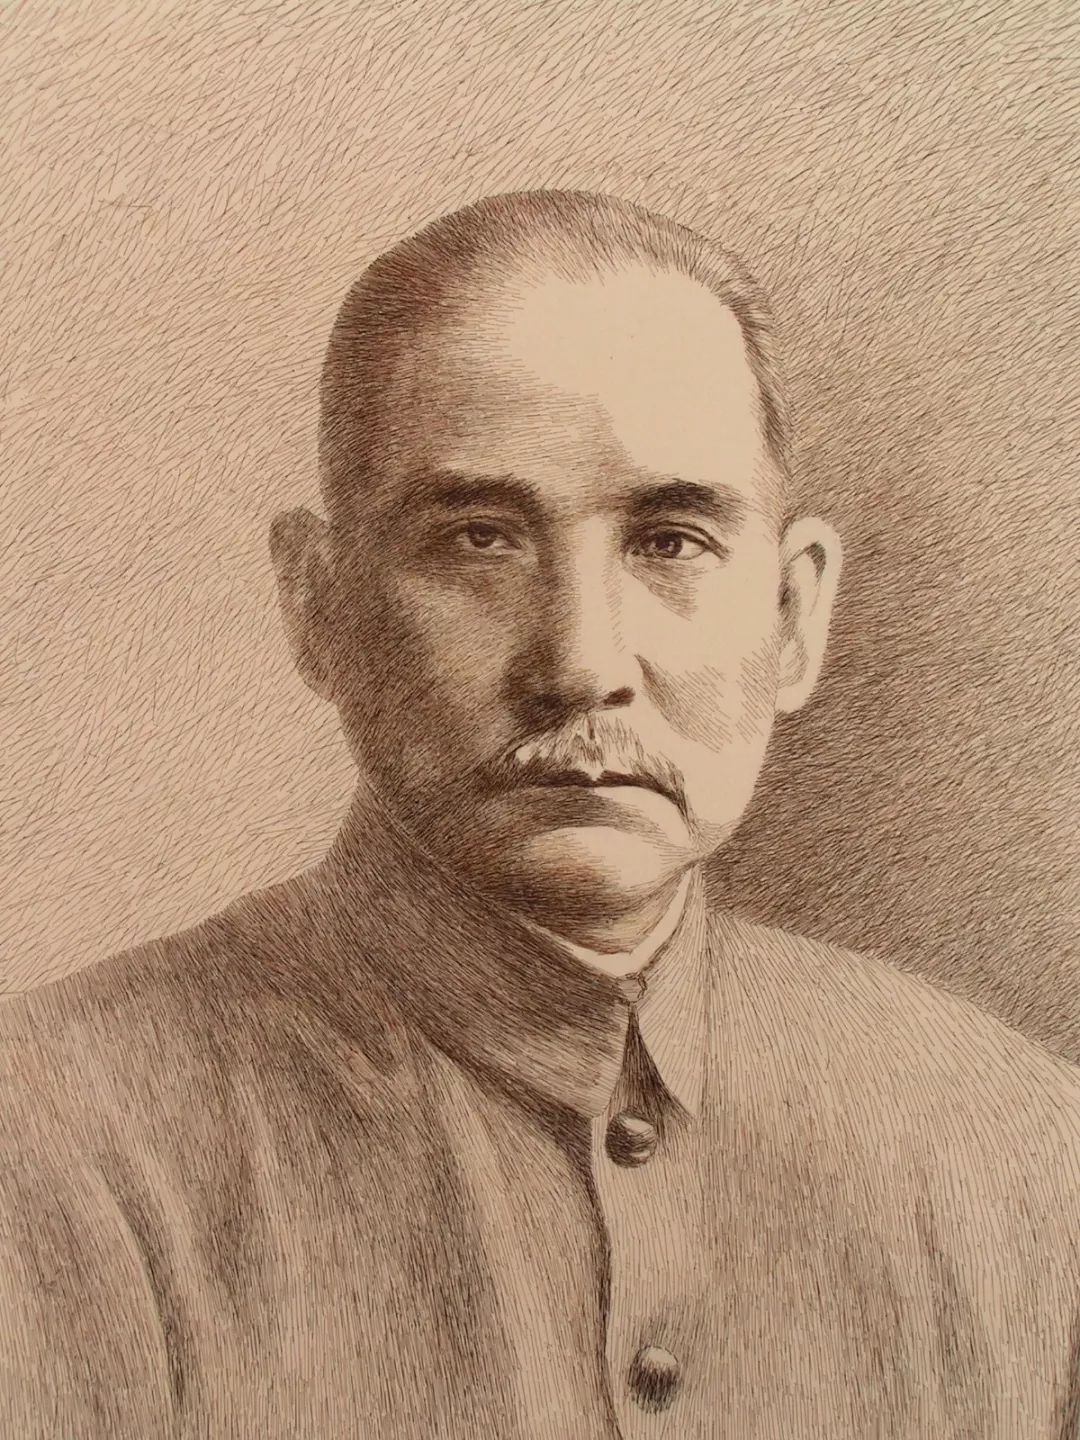 《孙中山》单色发绣,40×50 厘米,魏敬先绣于1990年